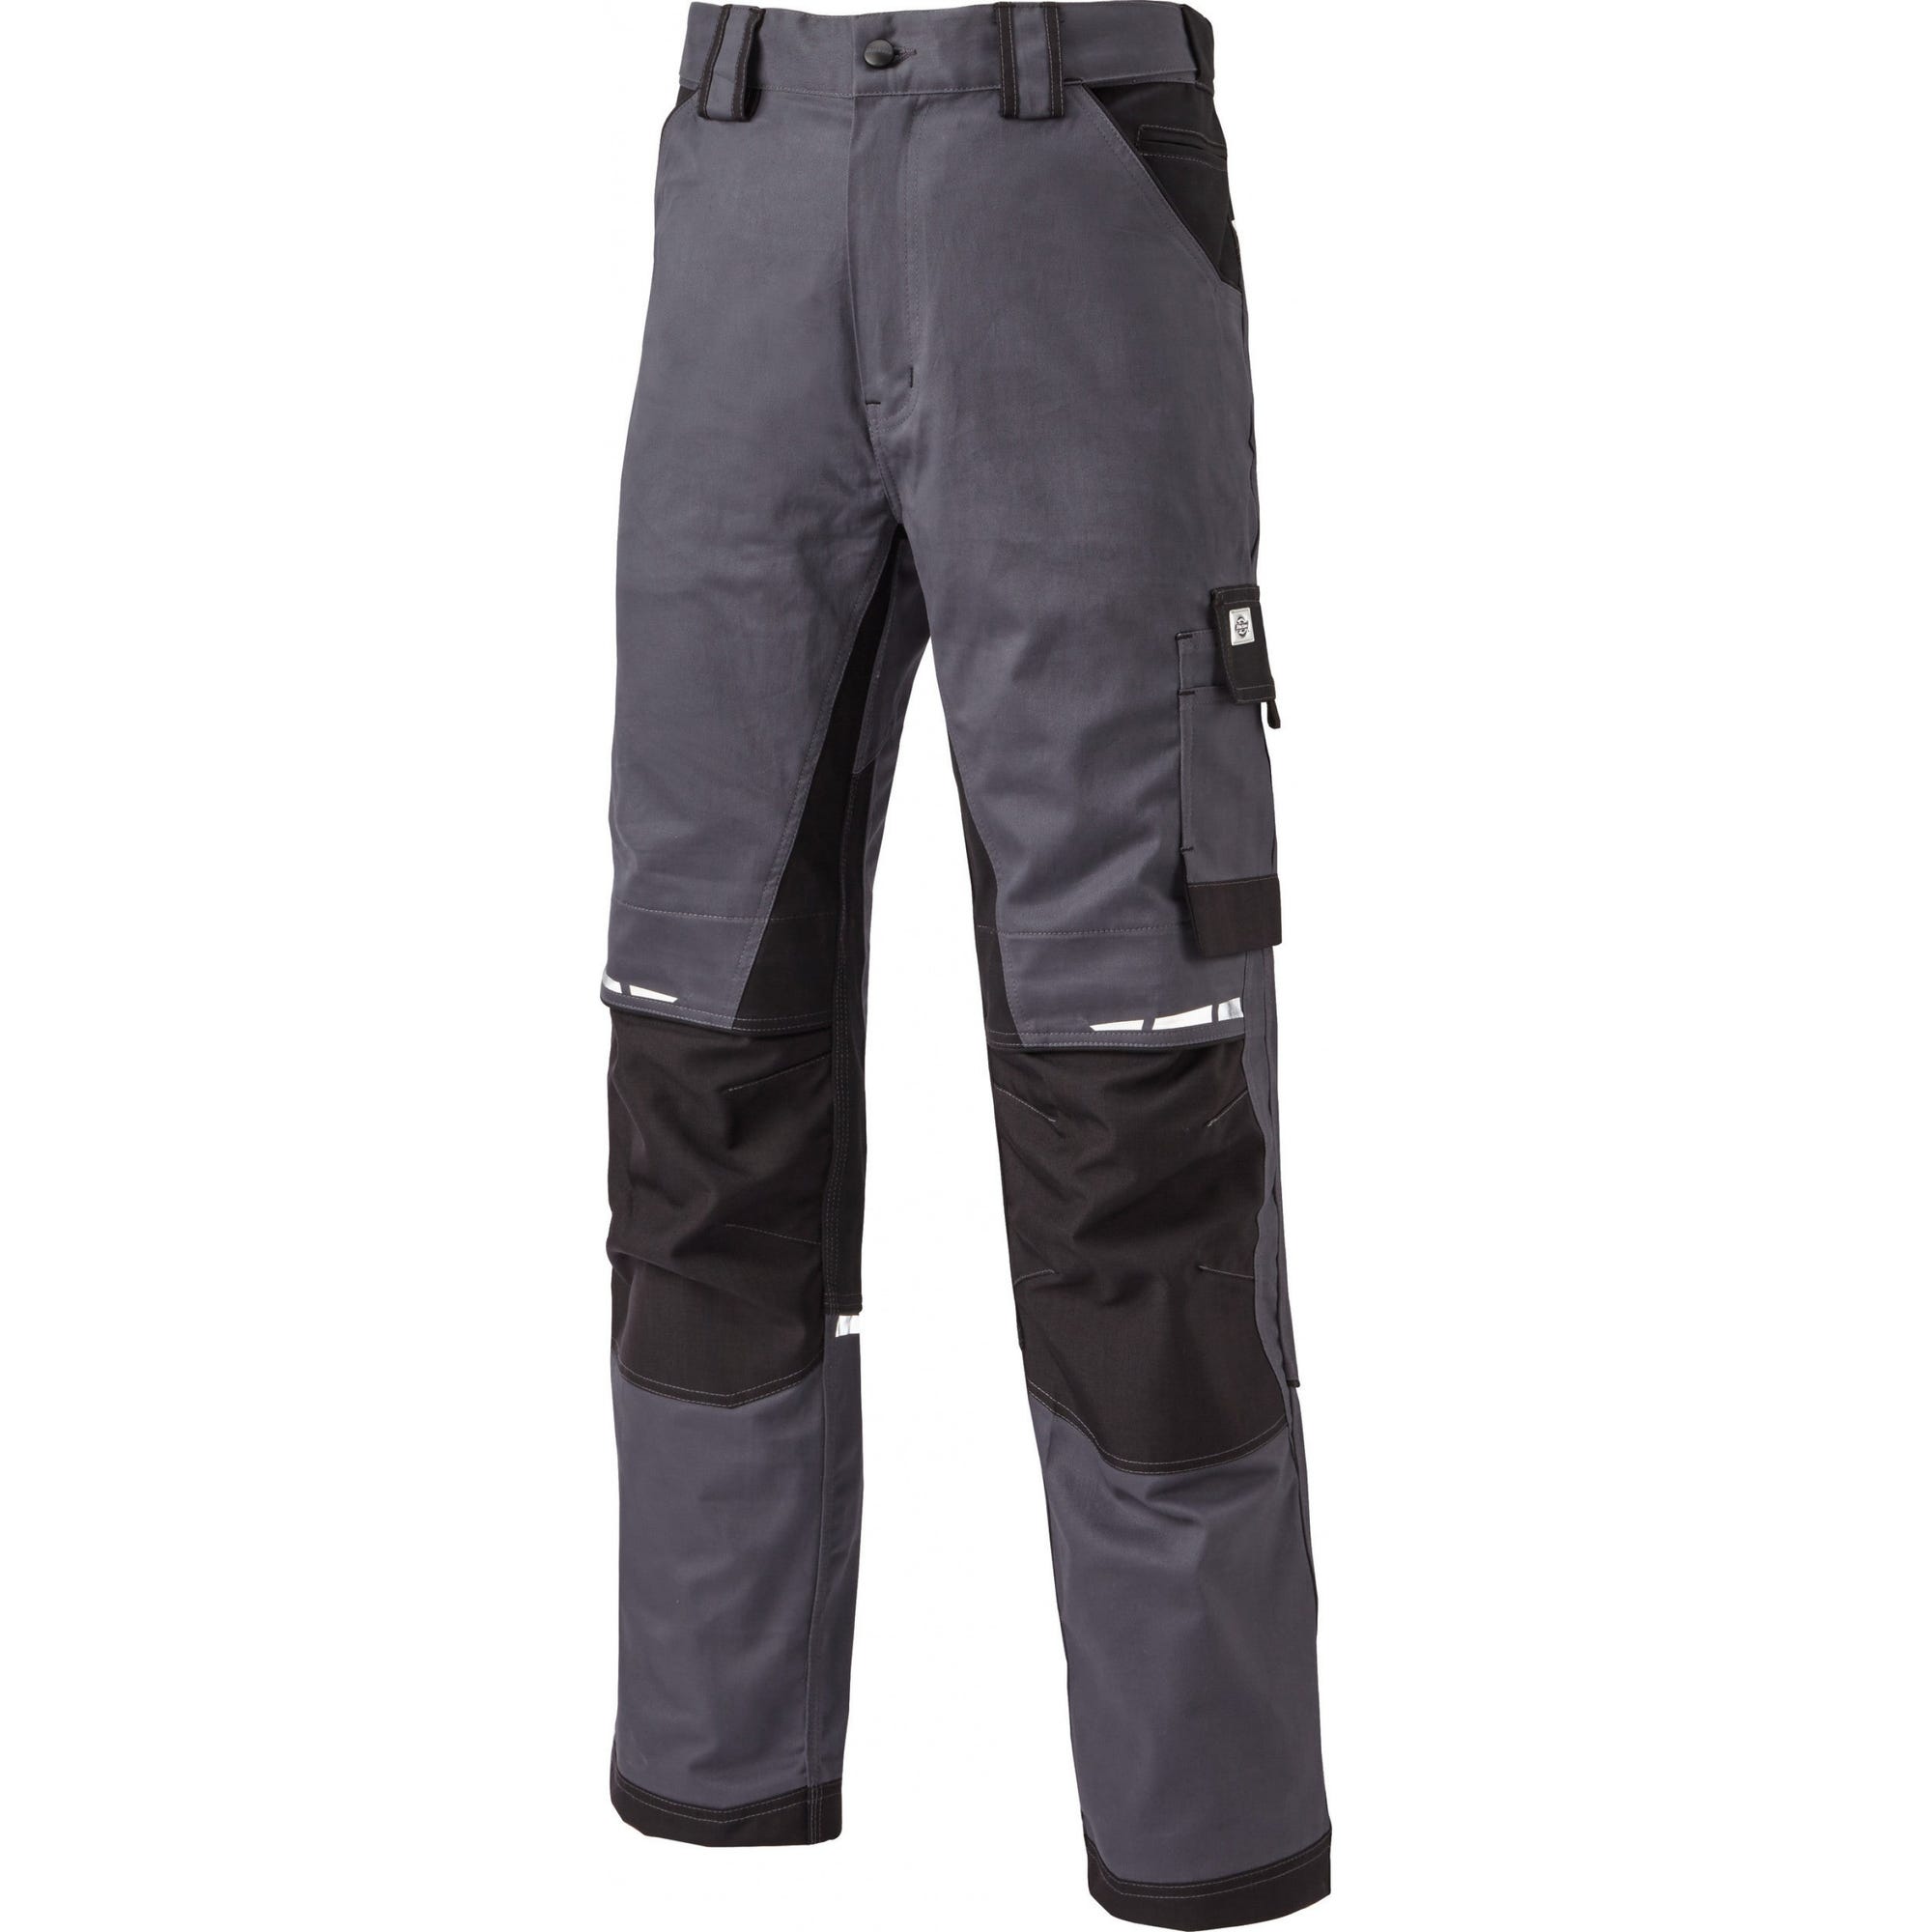 Pantalon de travail GDT Premium gris/noir - Dickies - Taille 44 5